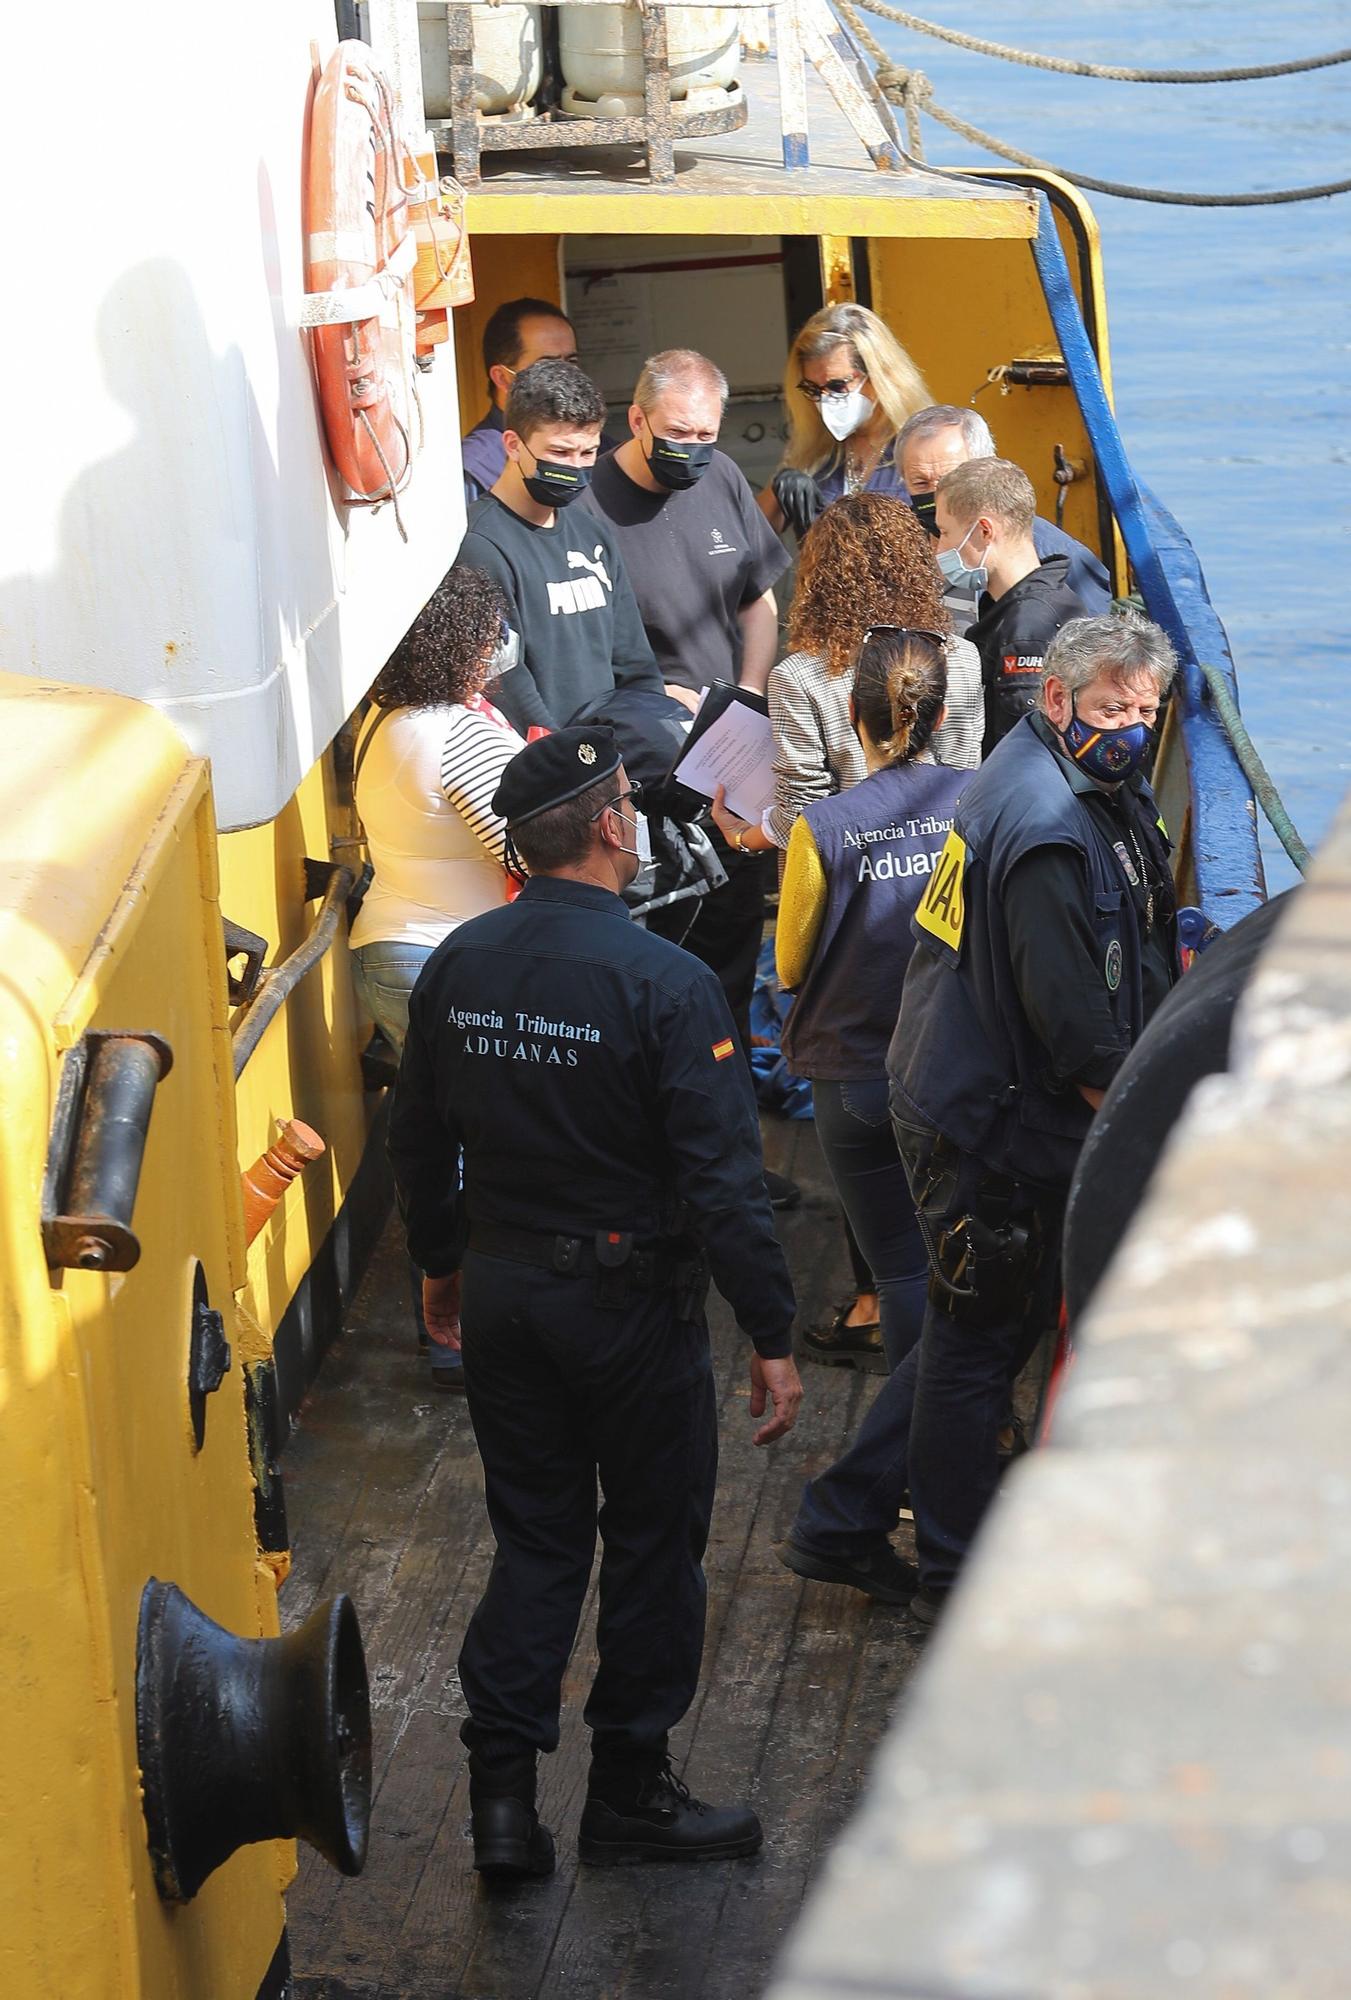 Desembarco en el Puerto de La Luz de los 18.000 kilos de hachís del pesquero  ‘Albatros Guard VSL’